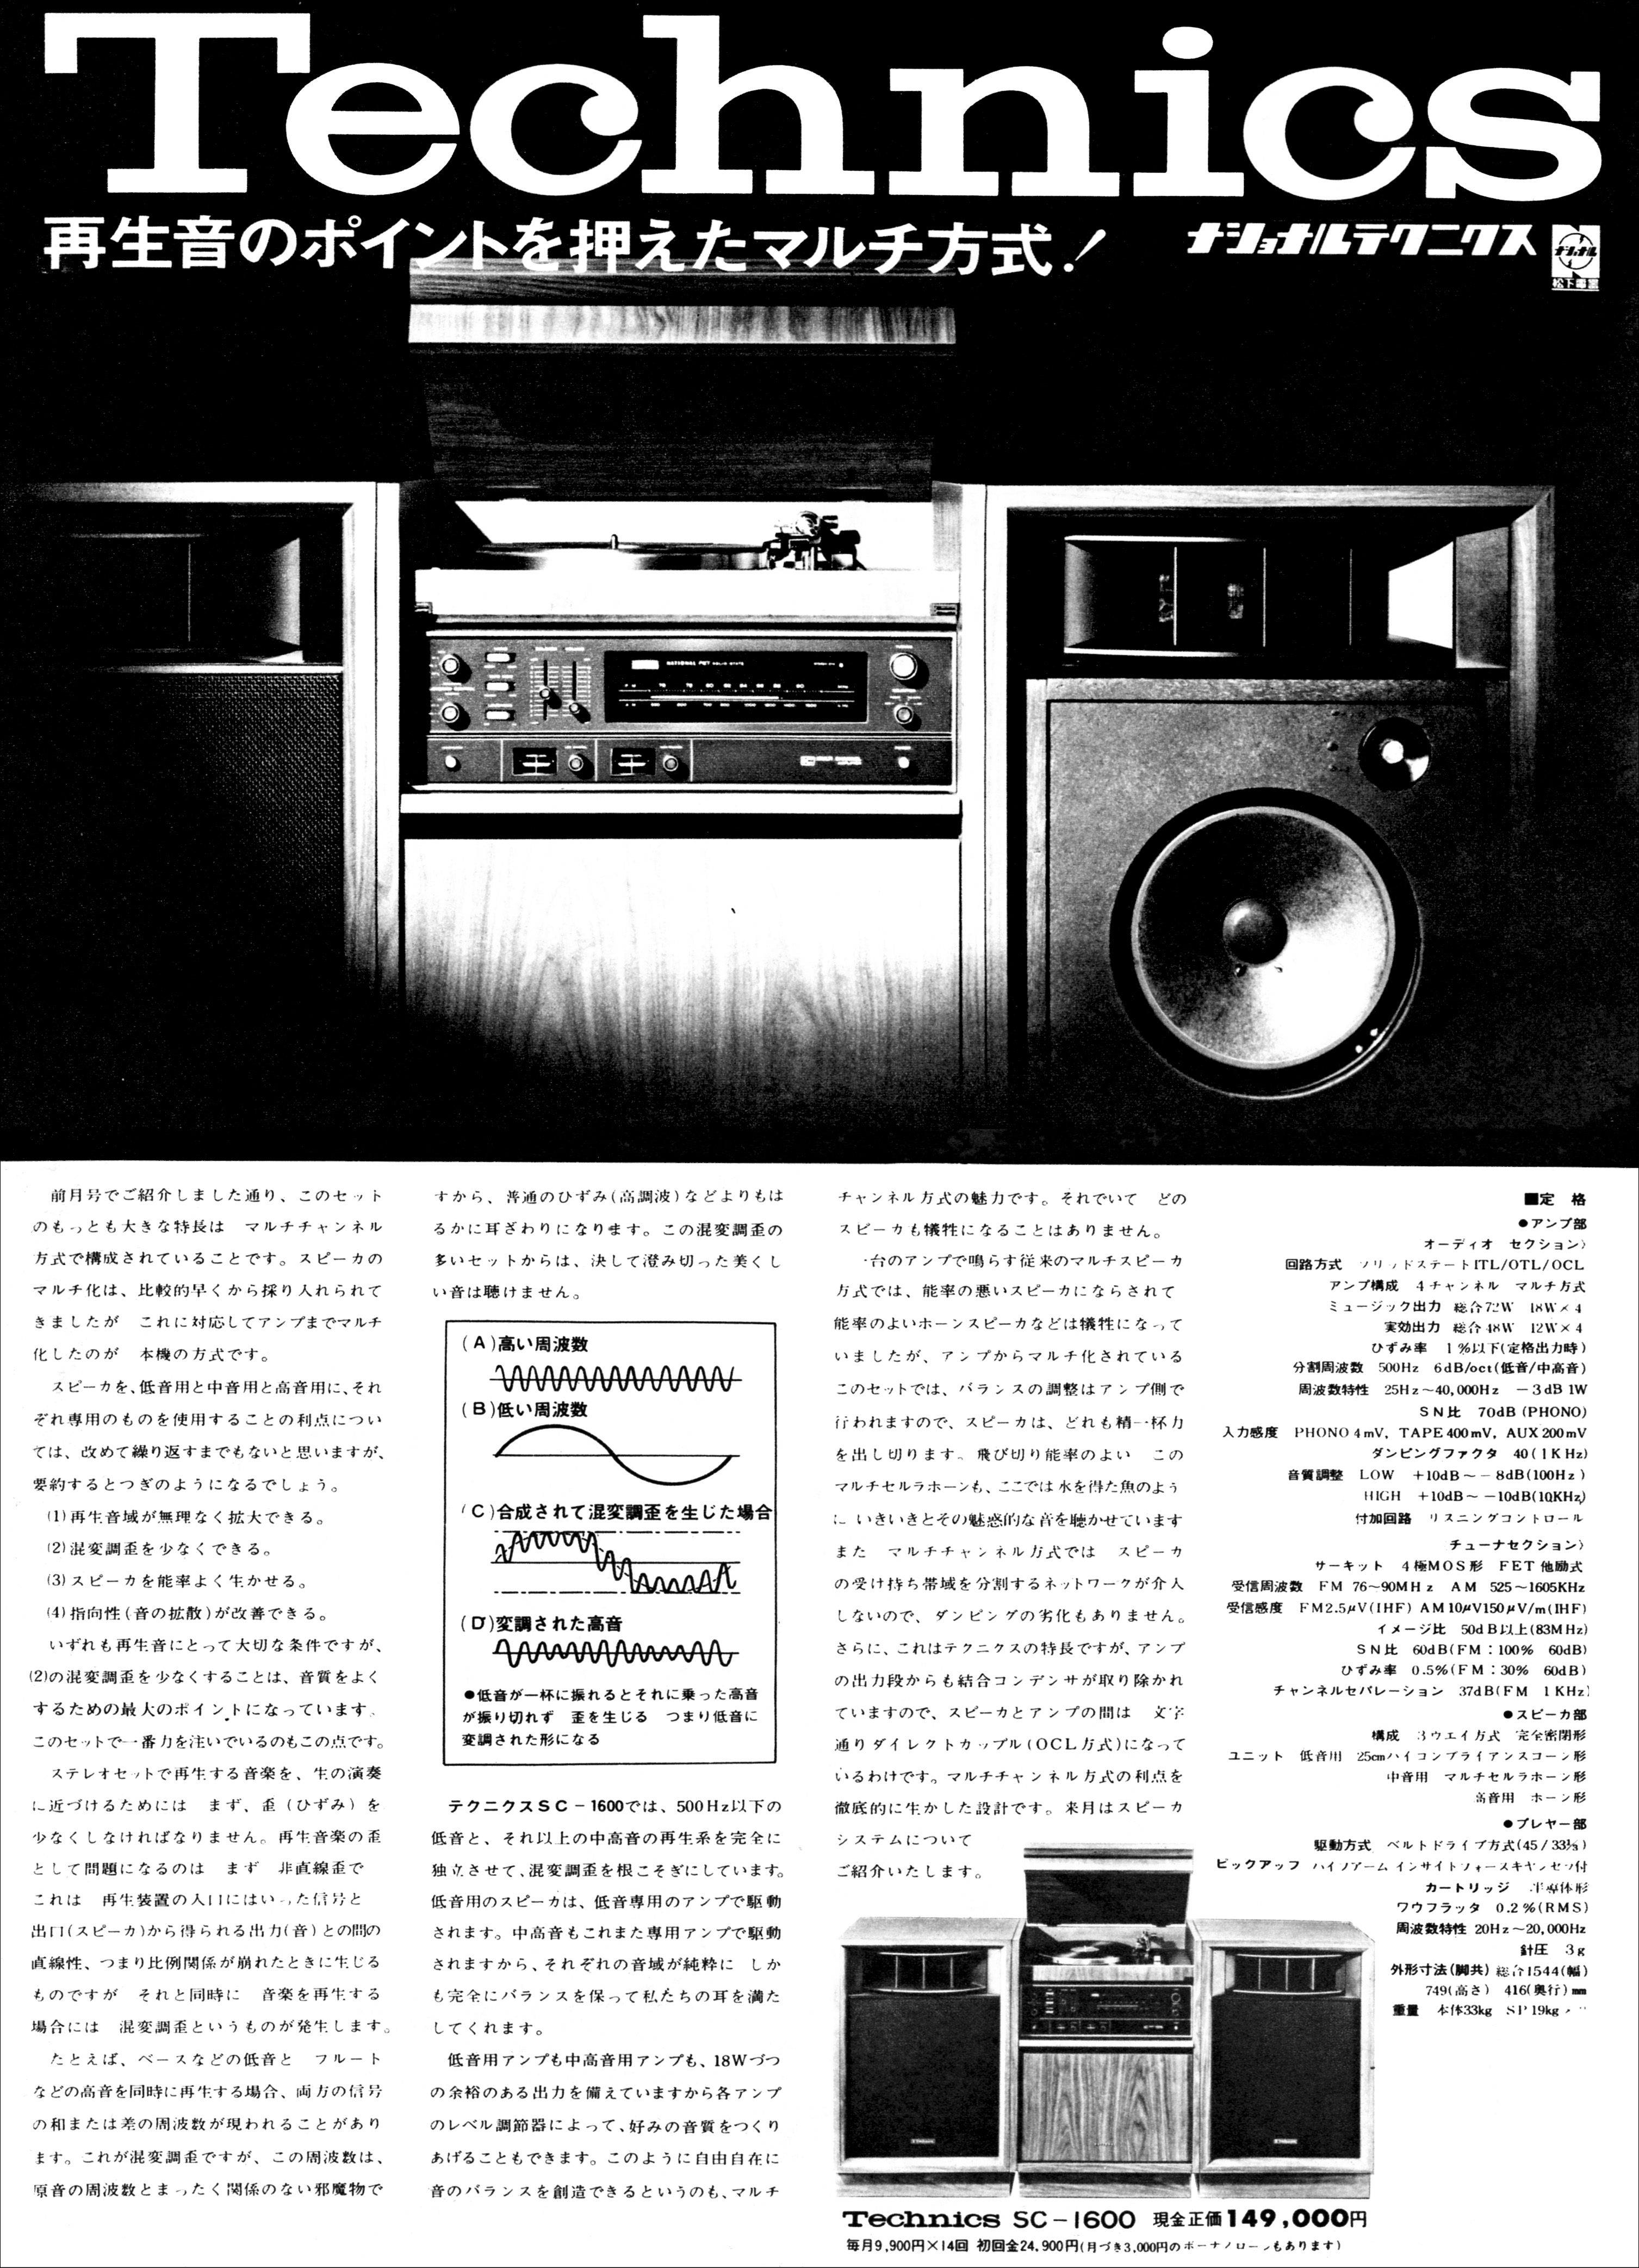 テクニクス SC-1600 | the re:View (in the past)